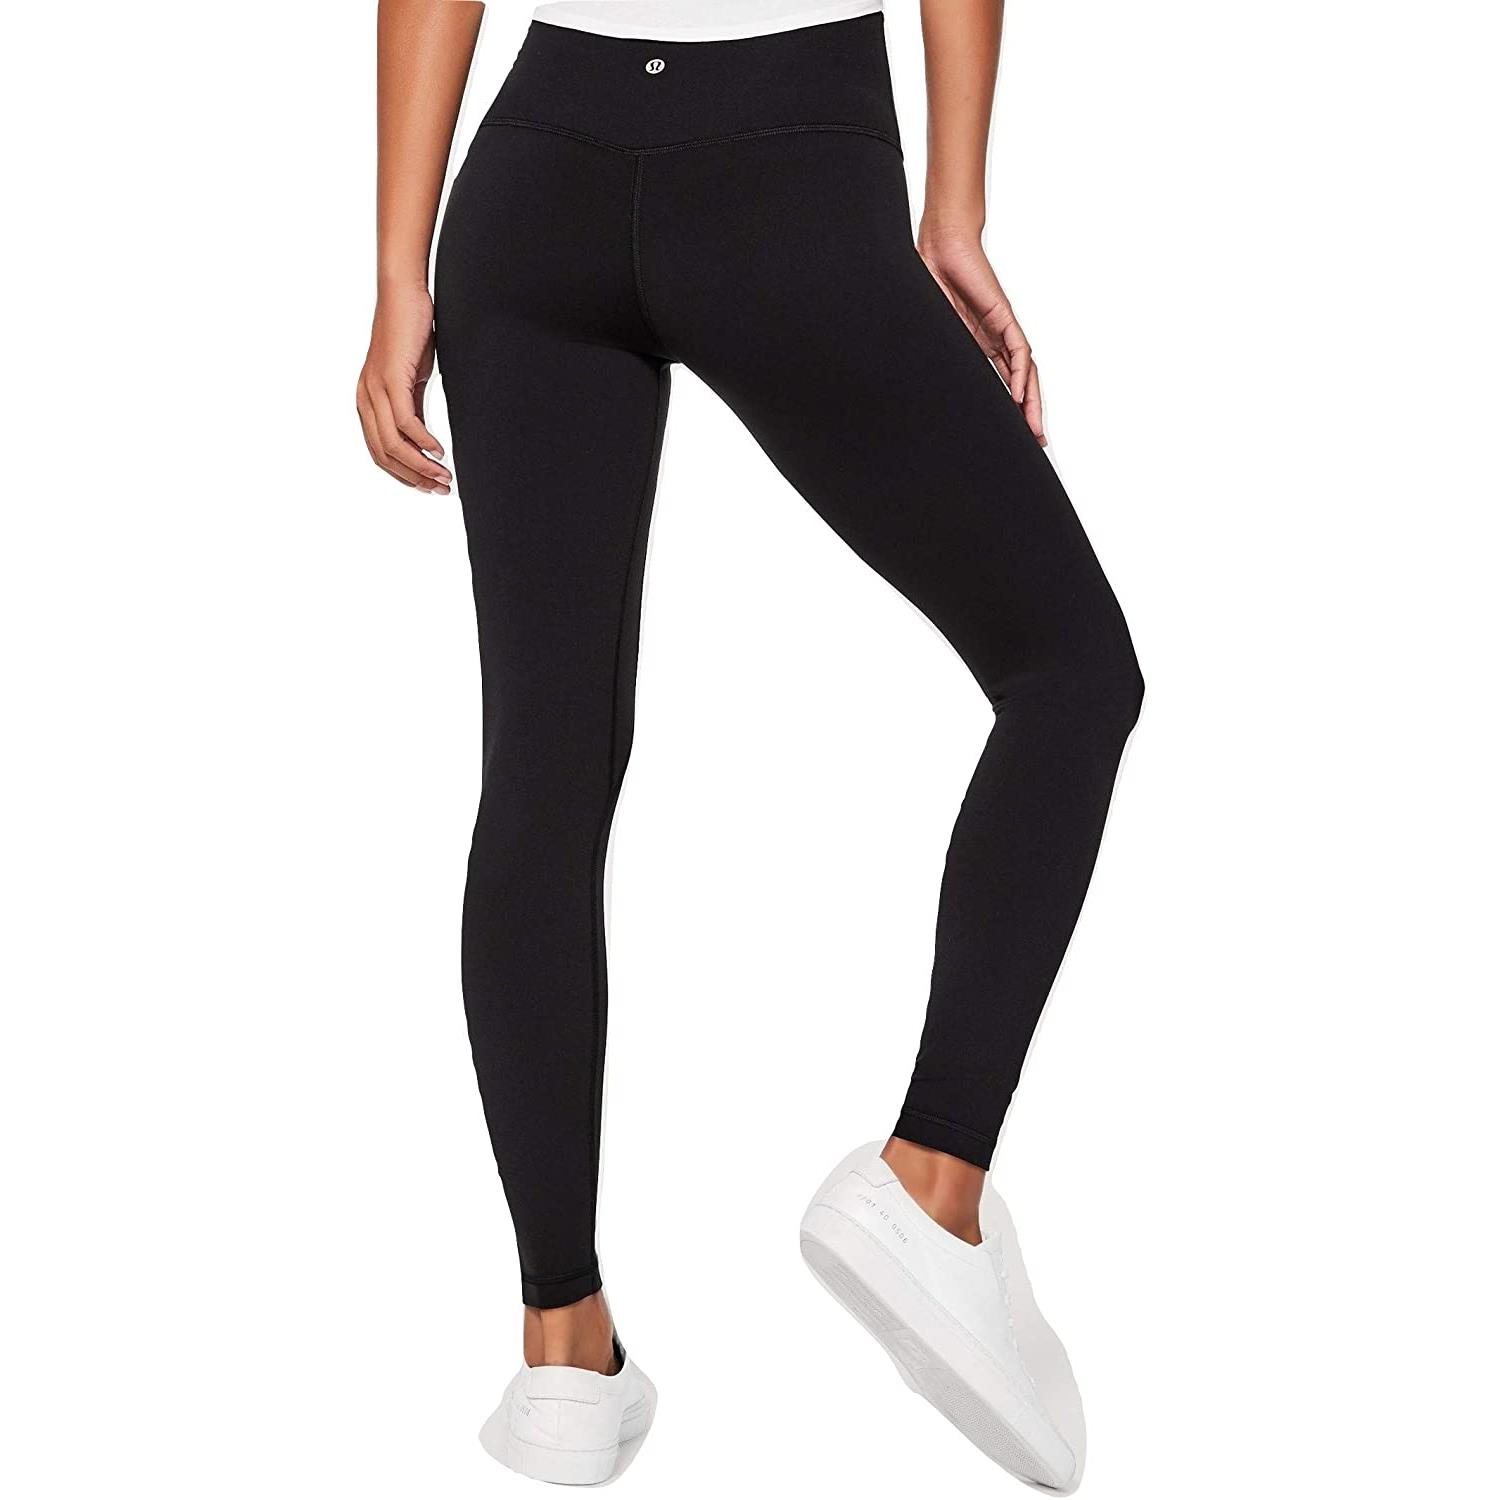 Lululemon Align Pant Full Length Yoga Pants Black